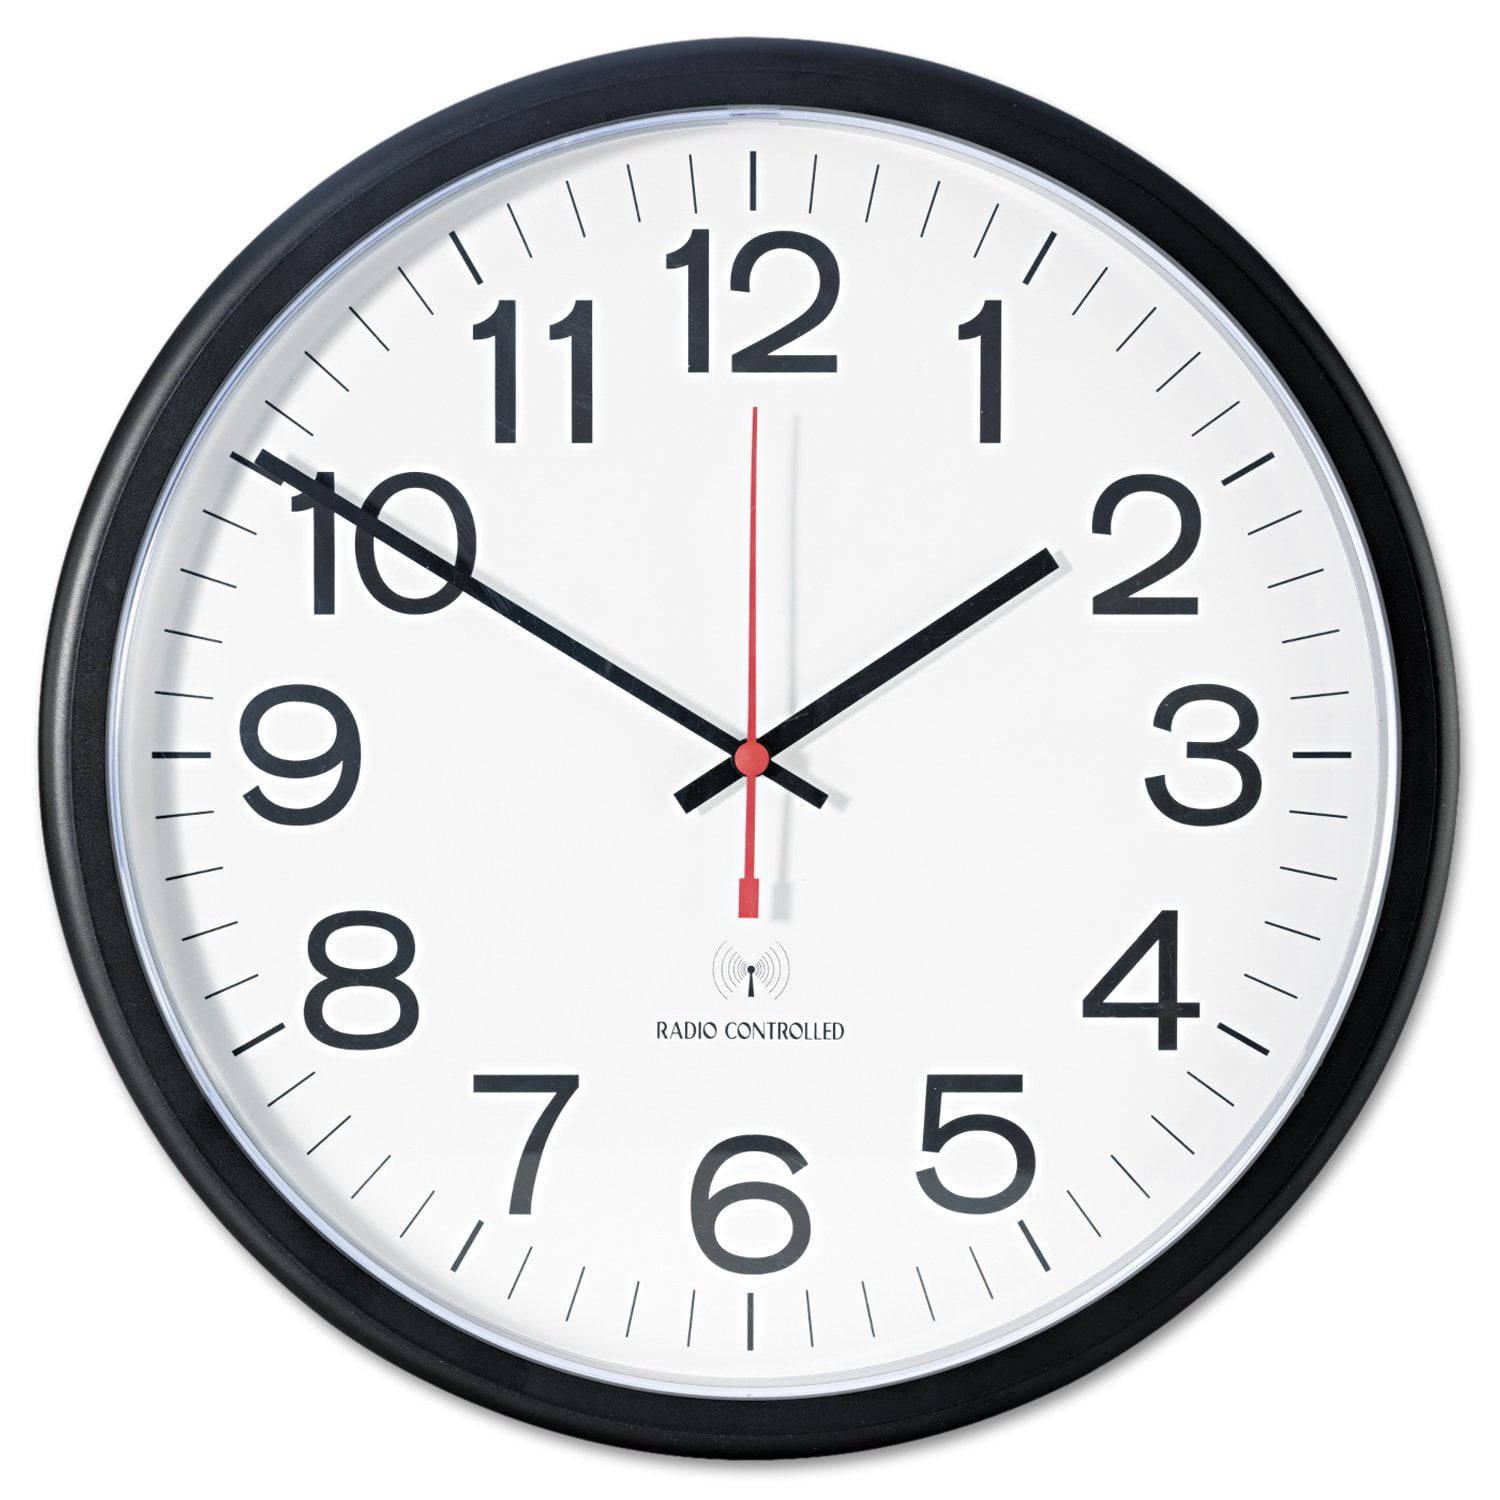 13 13 н часах. Часы. 13:50 Часы. Часы настенные с кругами. Часы на белом фоне.